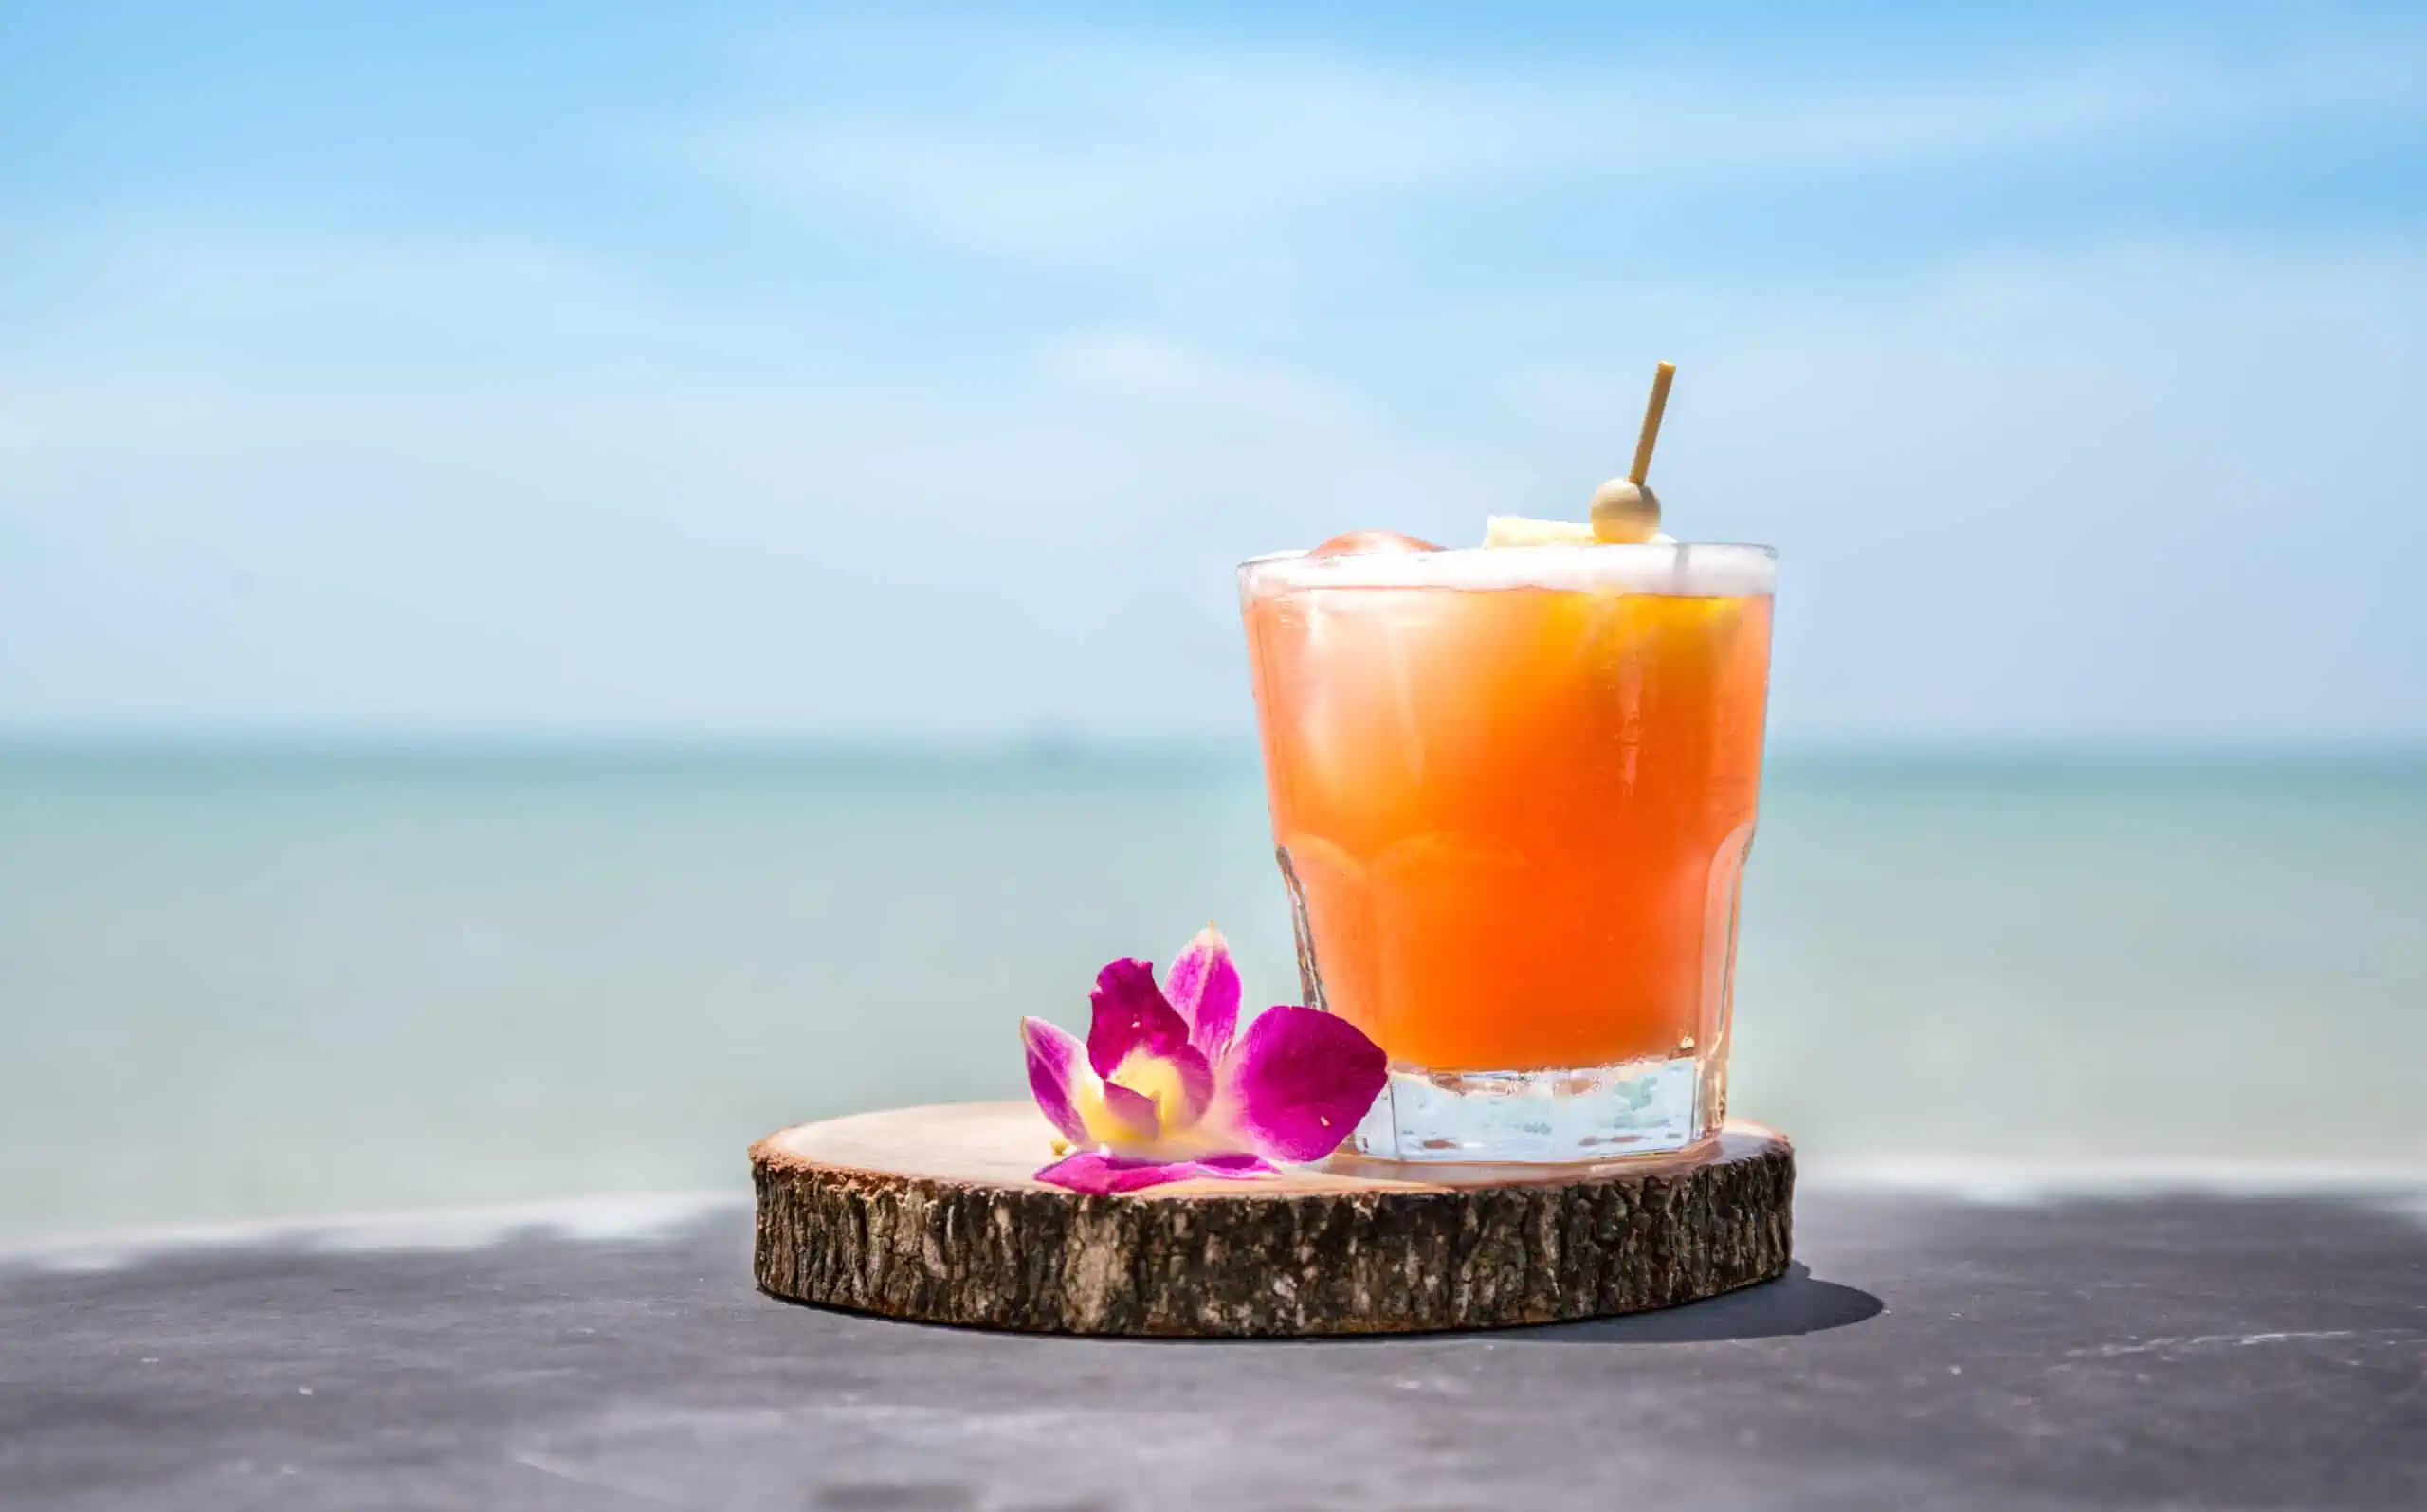 orange cocktail drink beside a pink flower